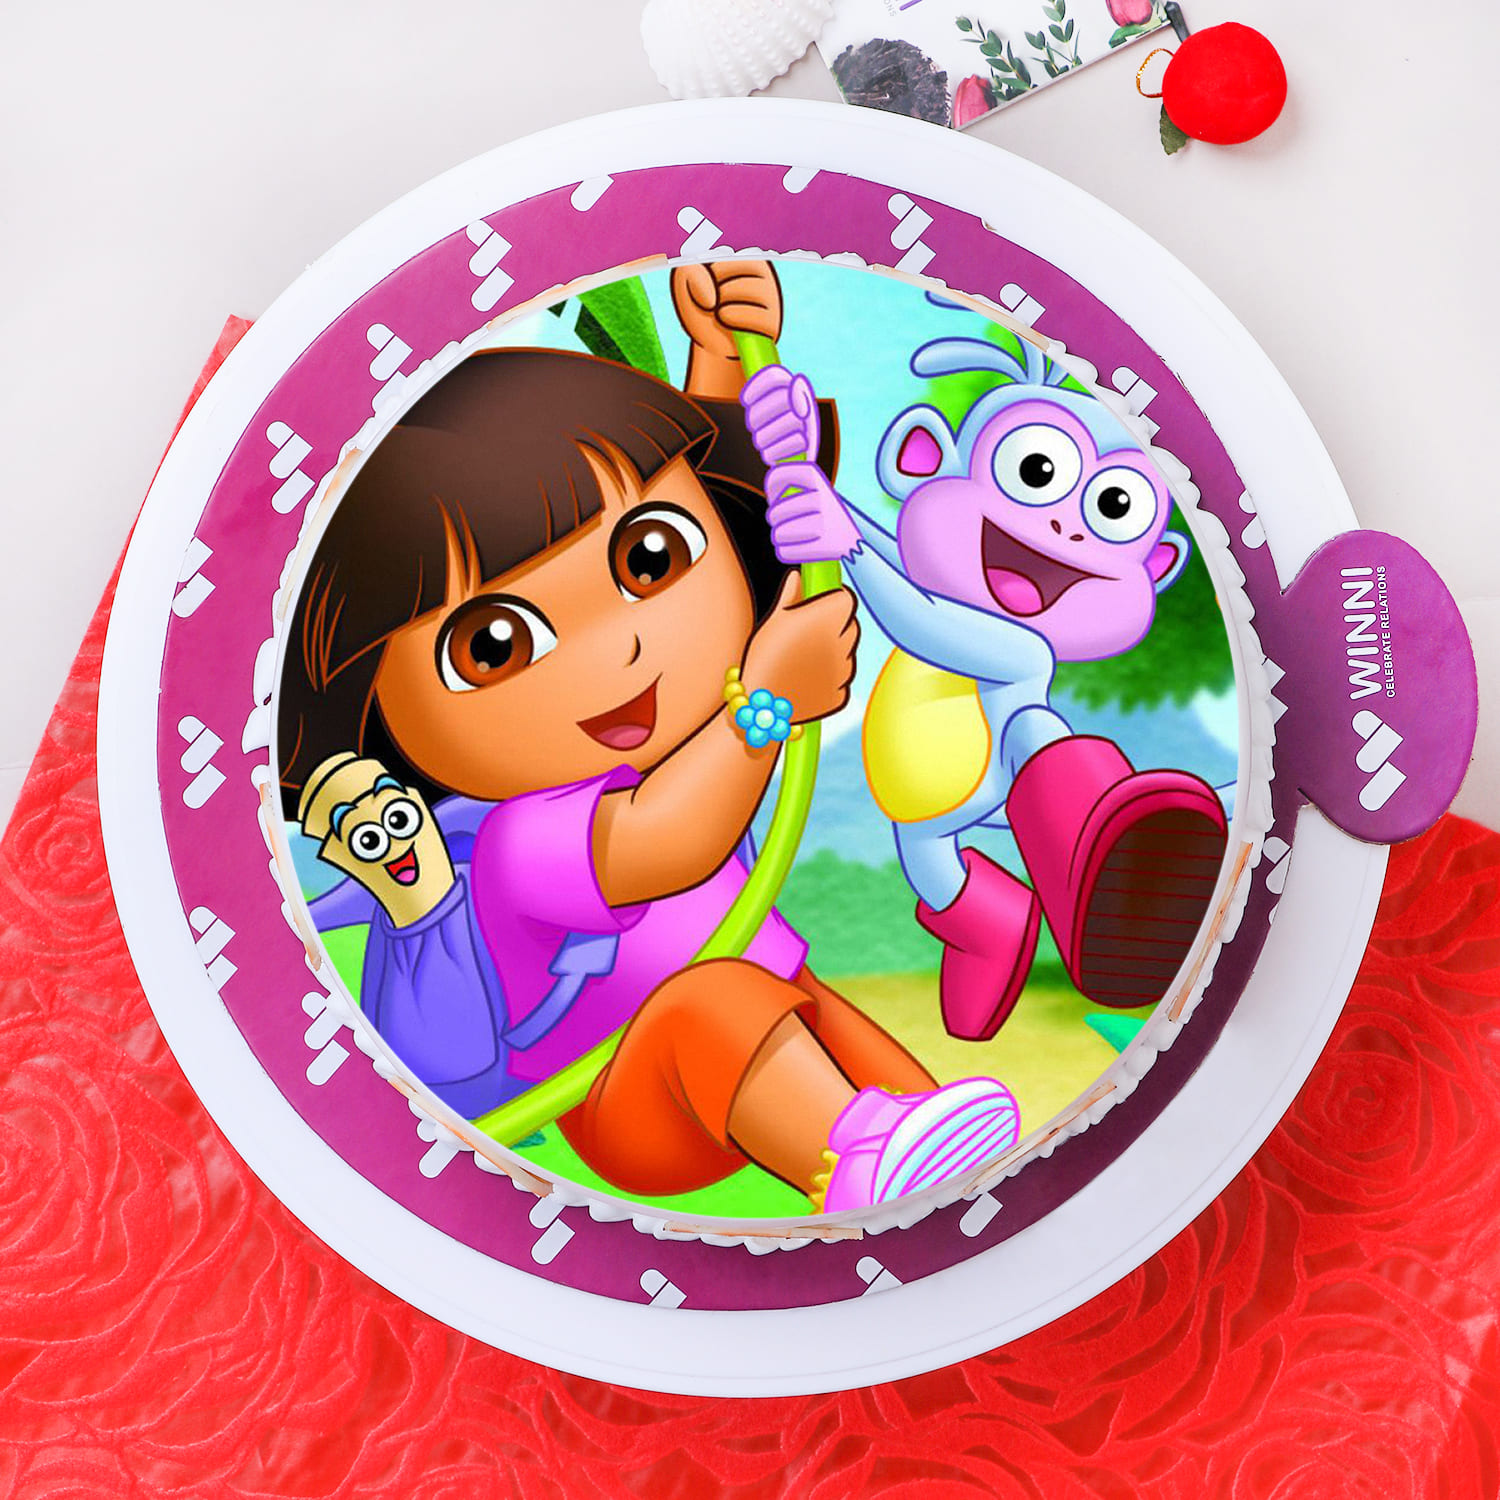 Dora Theme Cakes Online | Order Dora Theme Cakes Online